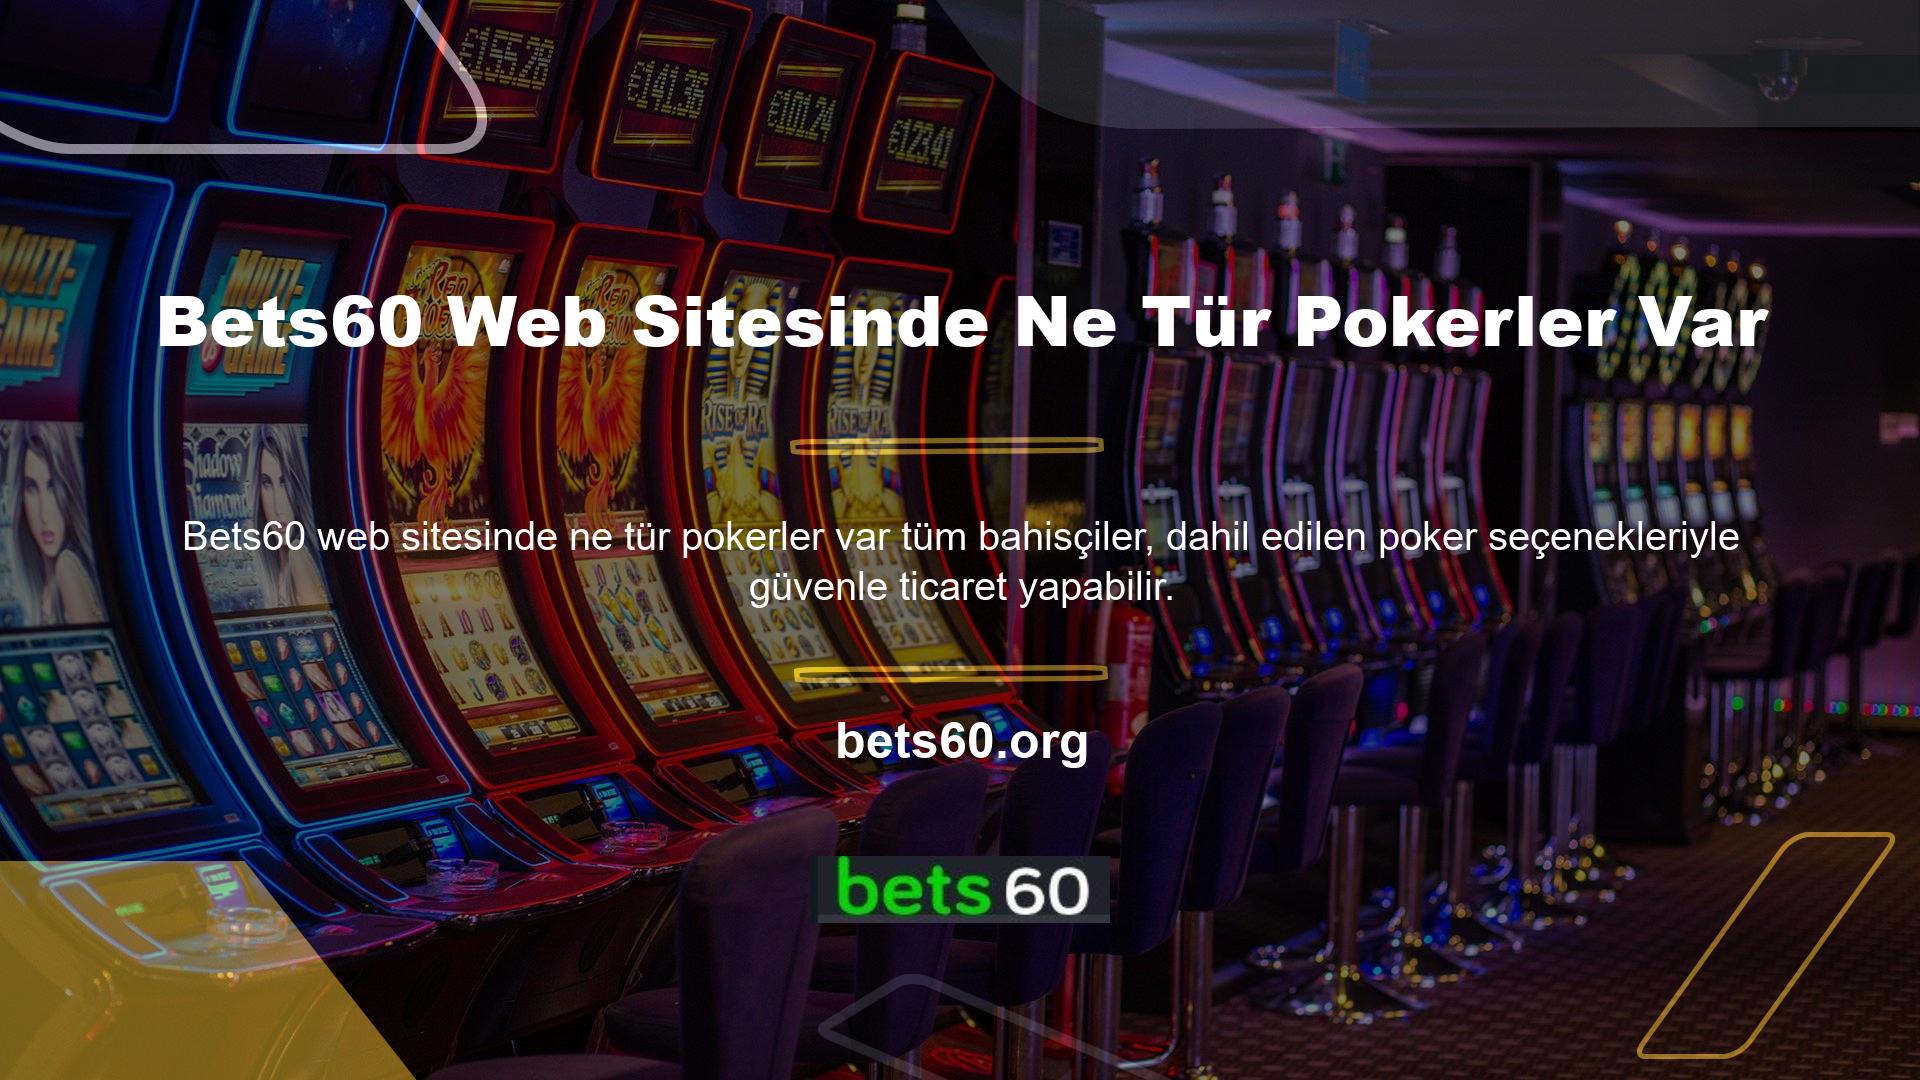 Herhangi bir bahisçi, canlı casino uygulaması aracılığıyla Bets60 web sitesinde bulunan poker türlerini keşfedebilir